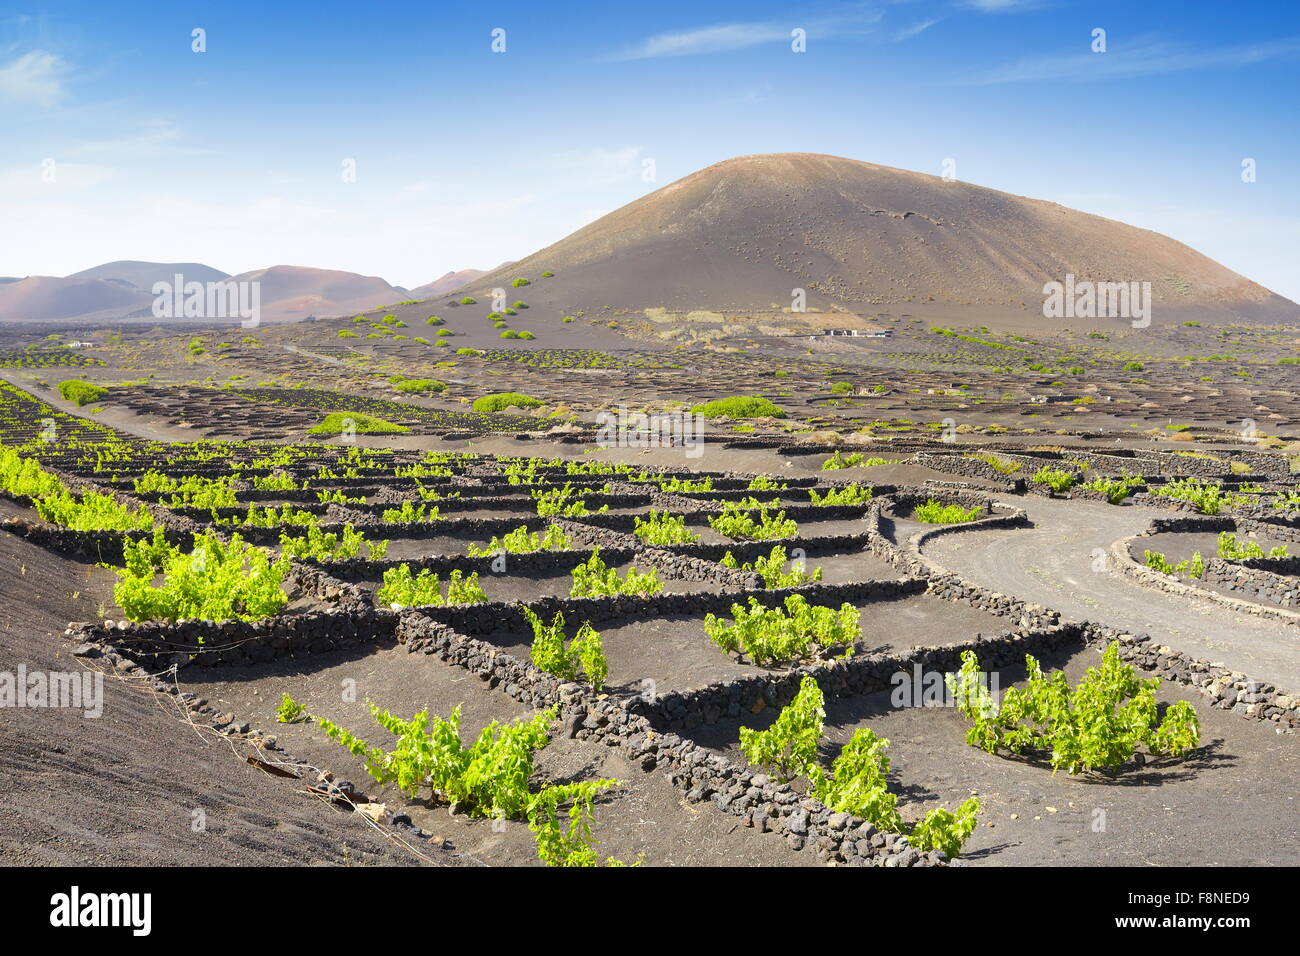 La plantación de viñas en suelo volcánico en La Geria, Lanzarote, Islas Canarias, España Foto de stock